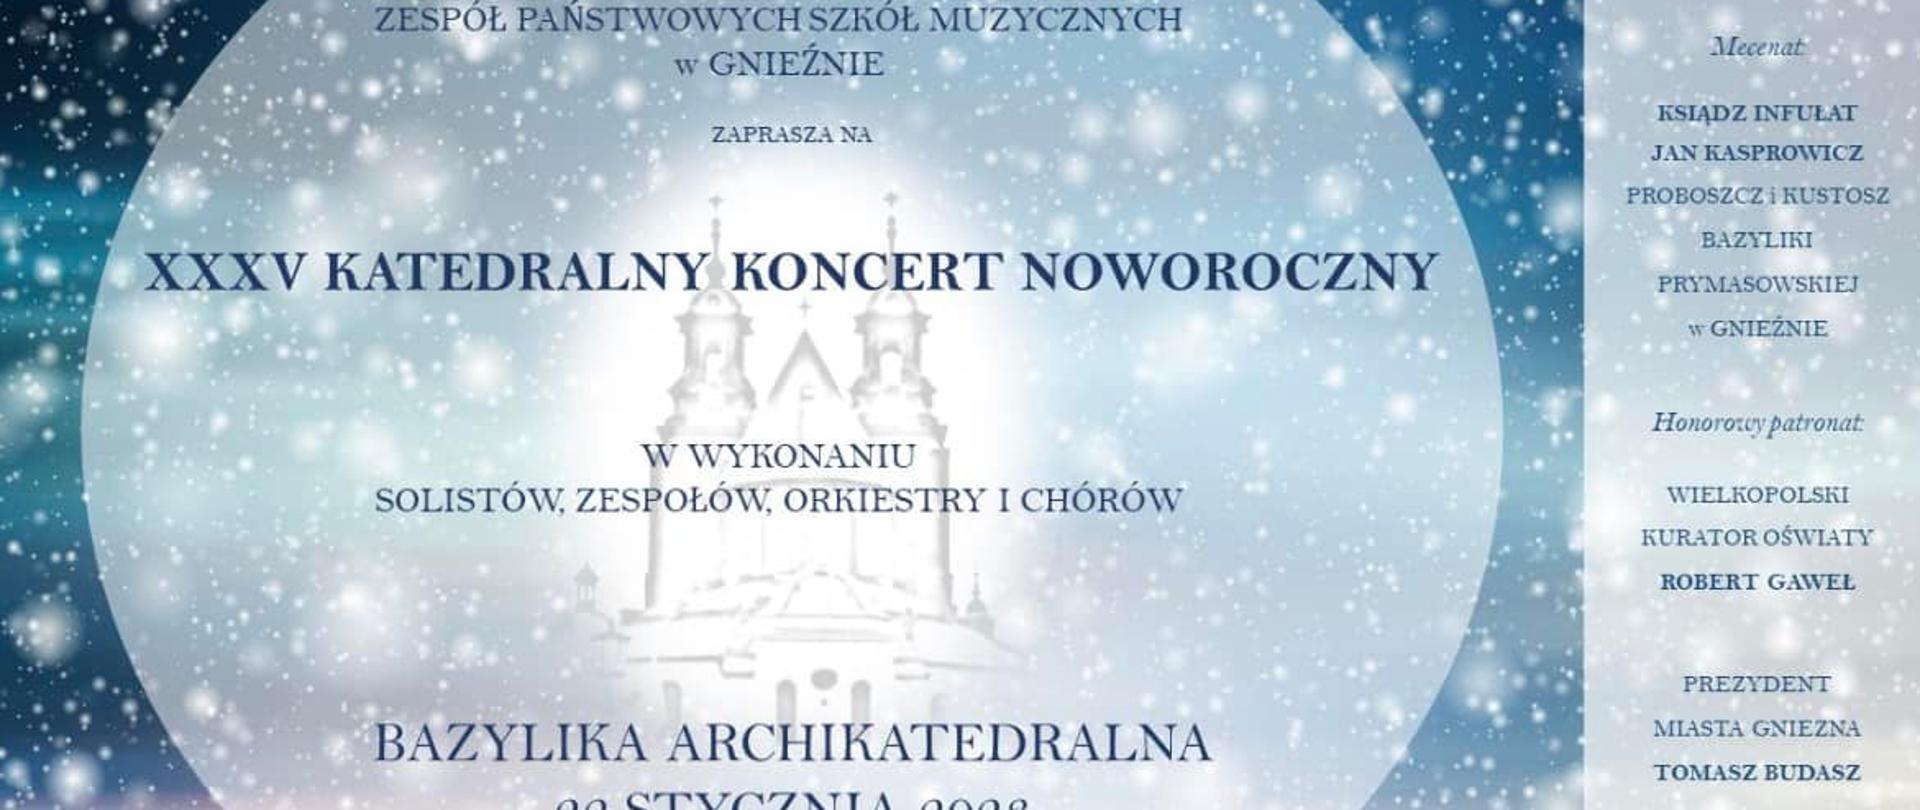 na błękitnym tle padający biały śnieg, na środku w białym kole napis informujący o koncercie, z prawej strony informacje o patronatach koncertu